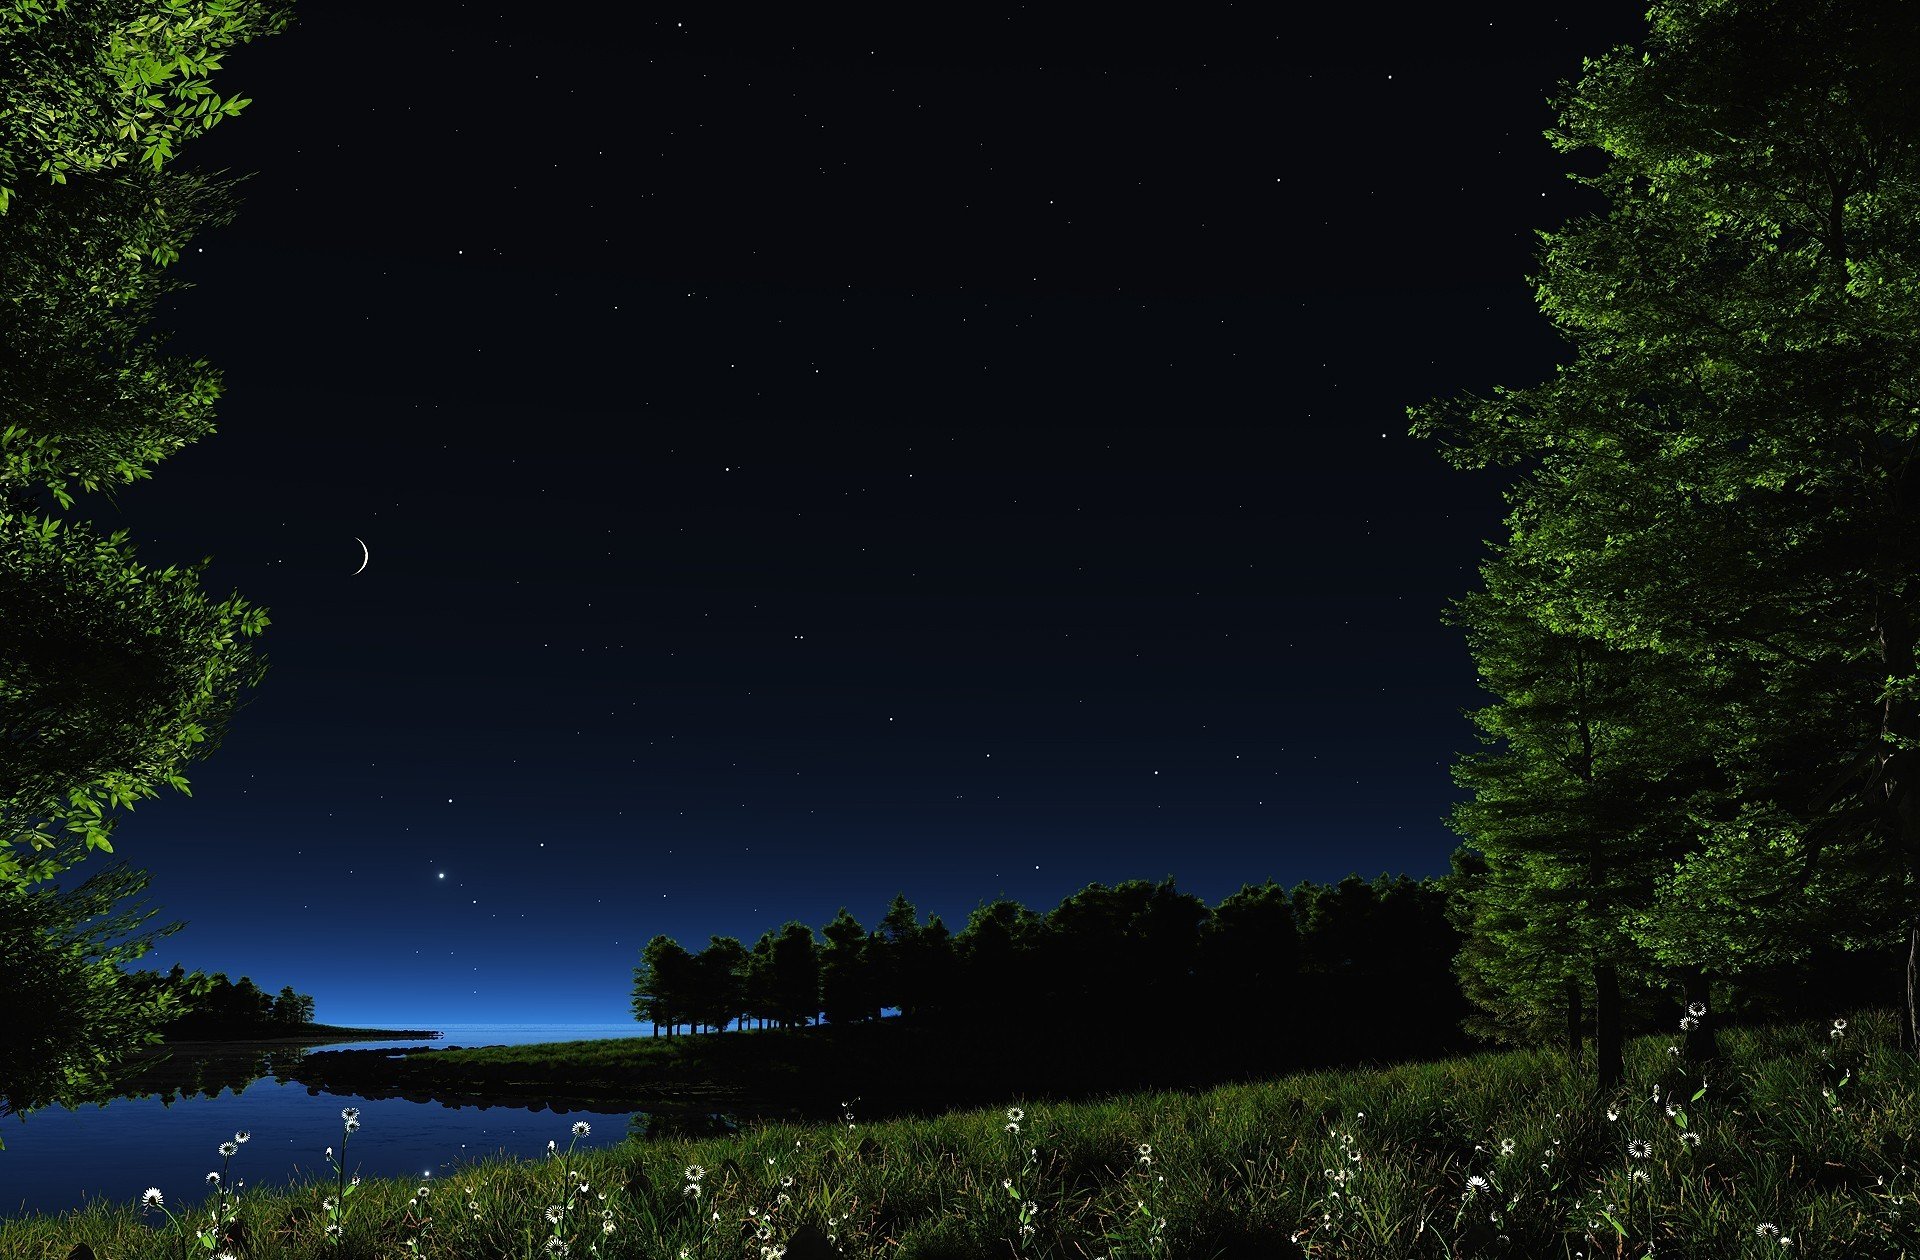 paisaje naturaleza noche cielo estrellas luna hierba vegetación plantas margaritas flores agua río lago estanque